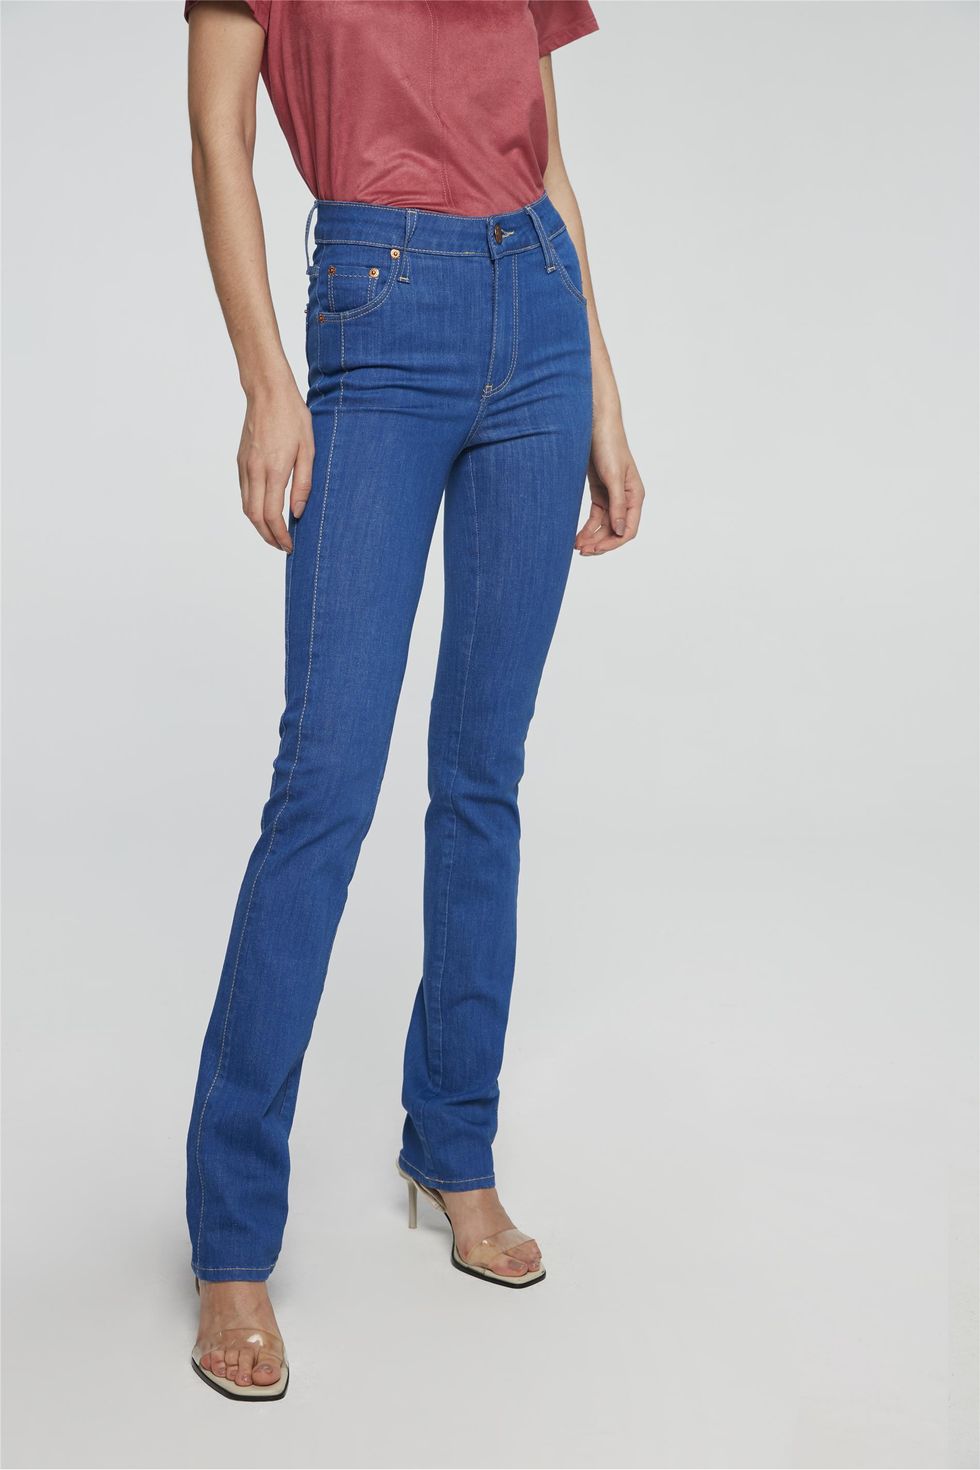 jeans tradicional feminino